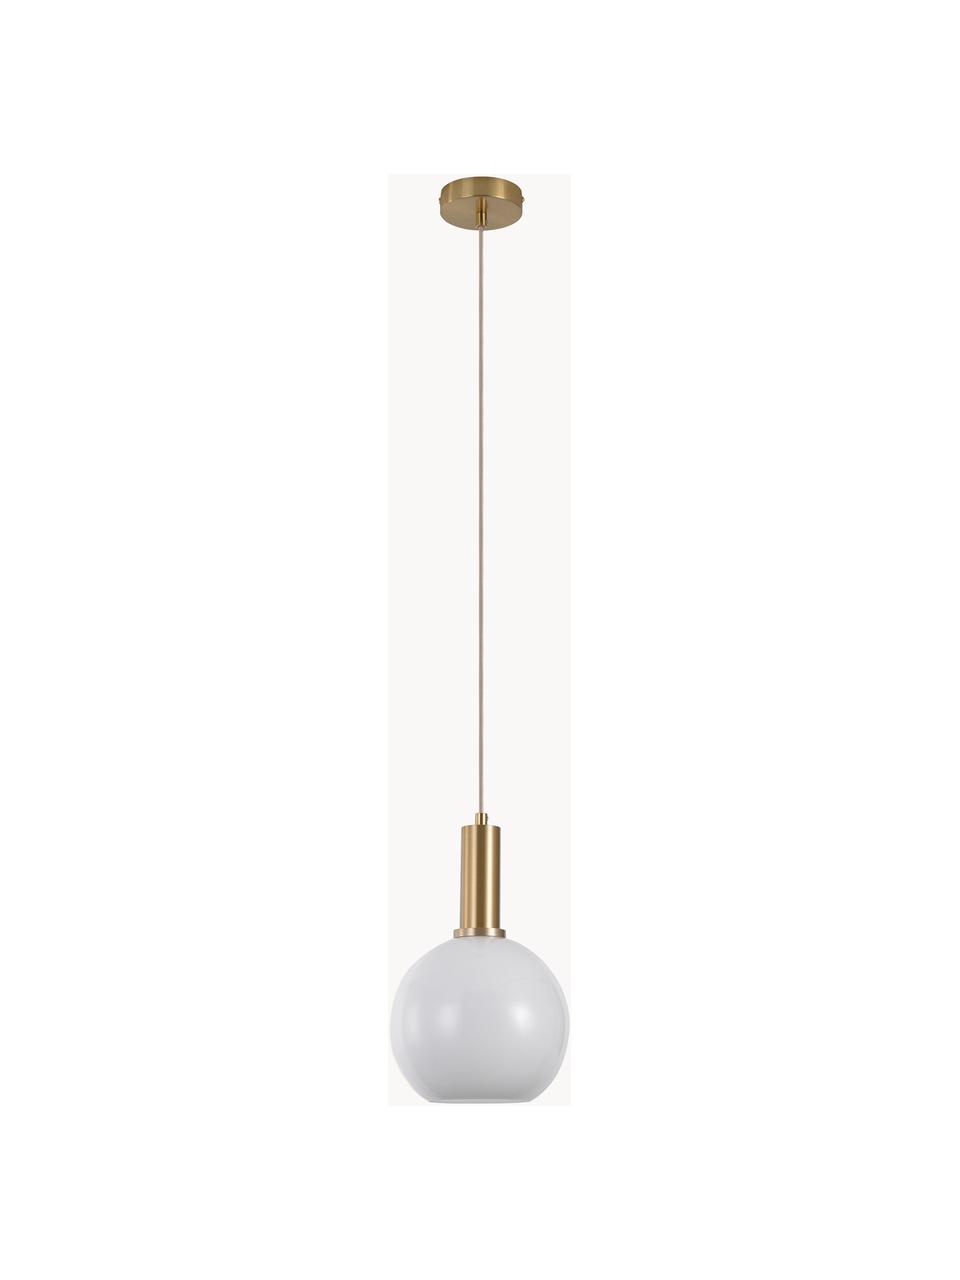 Hanglamp met glazen bollen Chelsea, Lampenkap: glas, Wit, goudkleurig, Ø 20 x H 31 cm